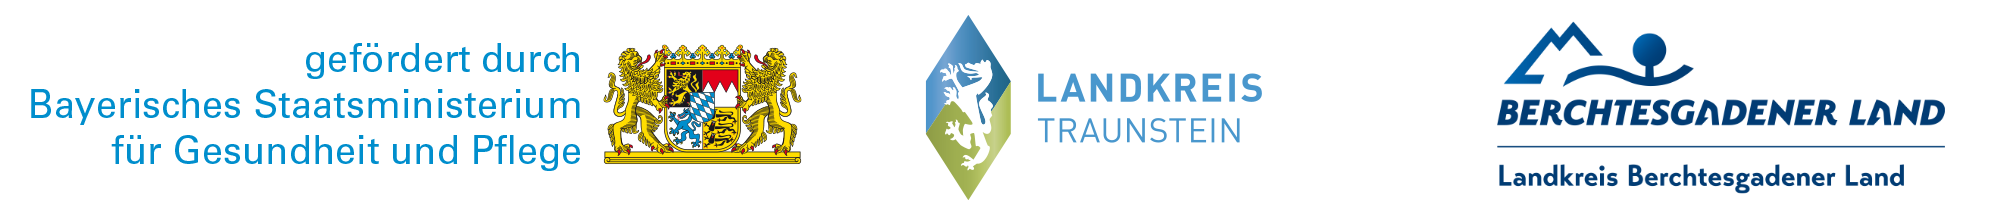 Logos Landkreis Traunstein und Berchtesgadener Land mit Hinweis gefördert durch Bayerisches Staatsministerium für Gesundheit und Pflege